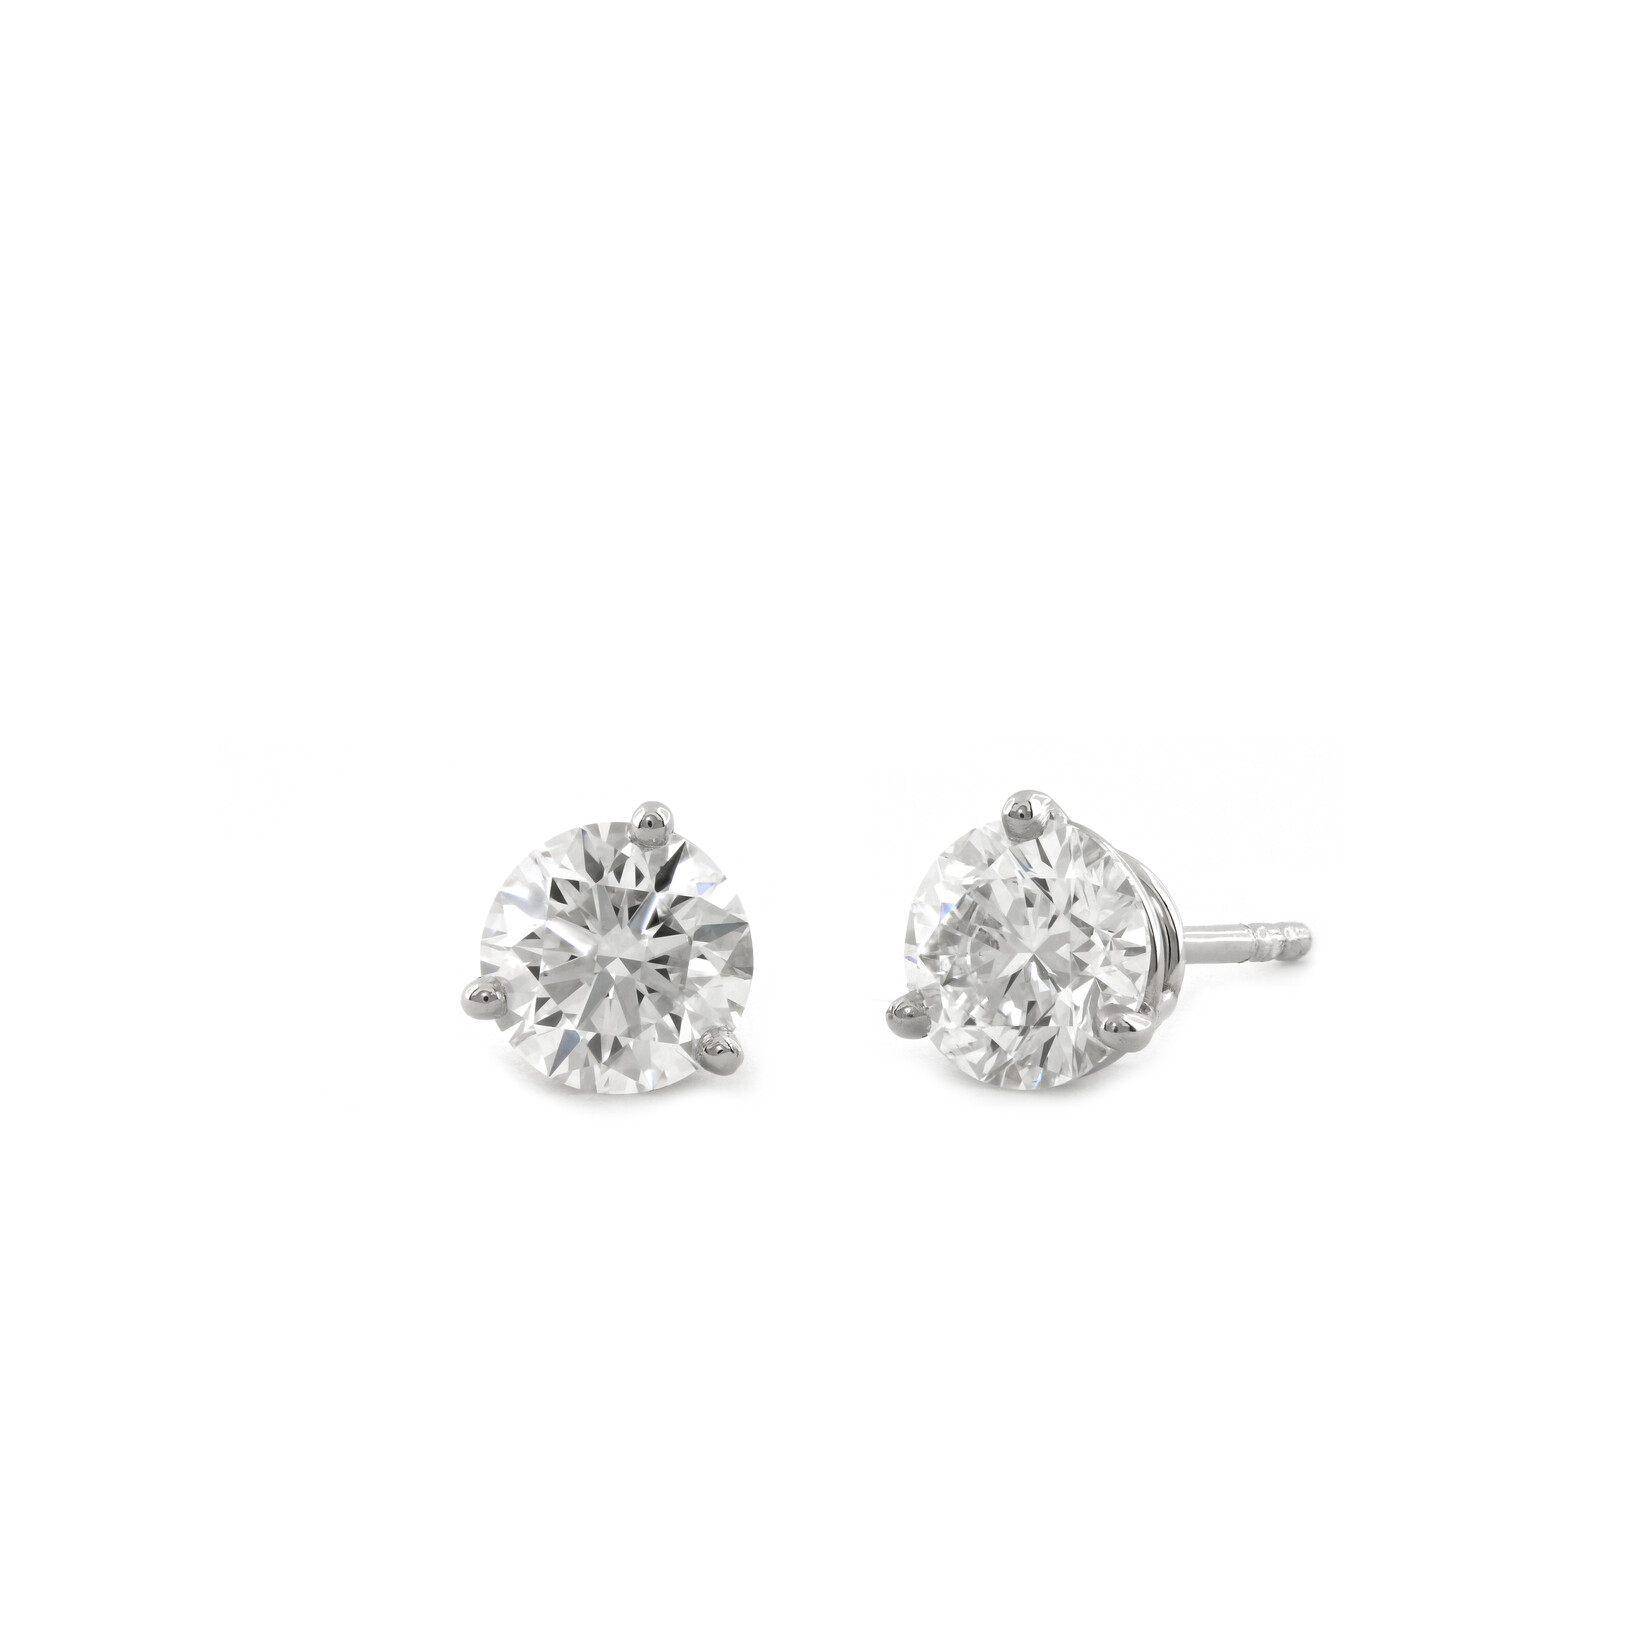 Baxter Moerman Diamond Stud Earrings - 3/4ctw GH/VS